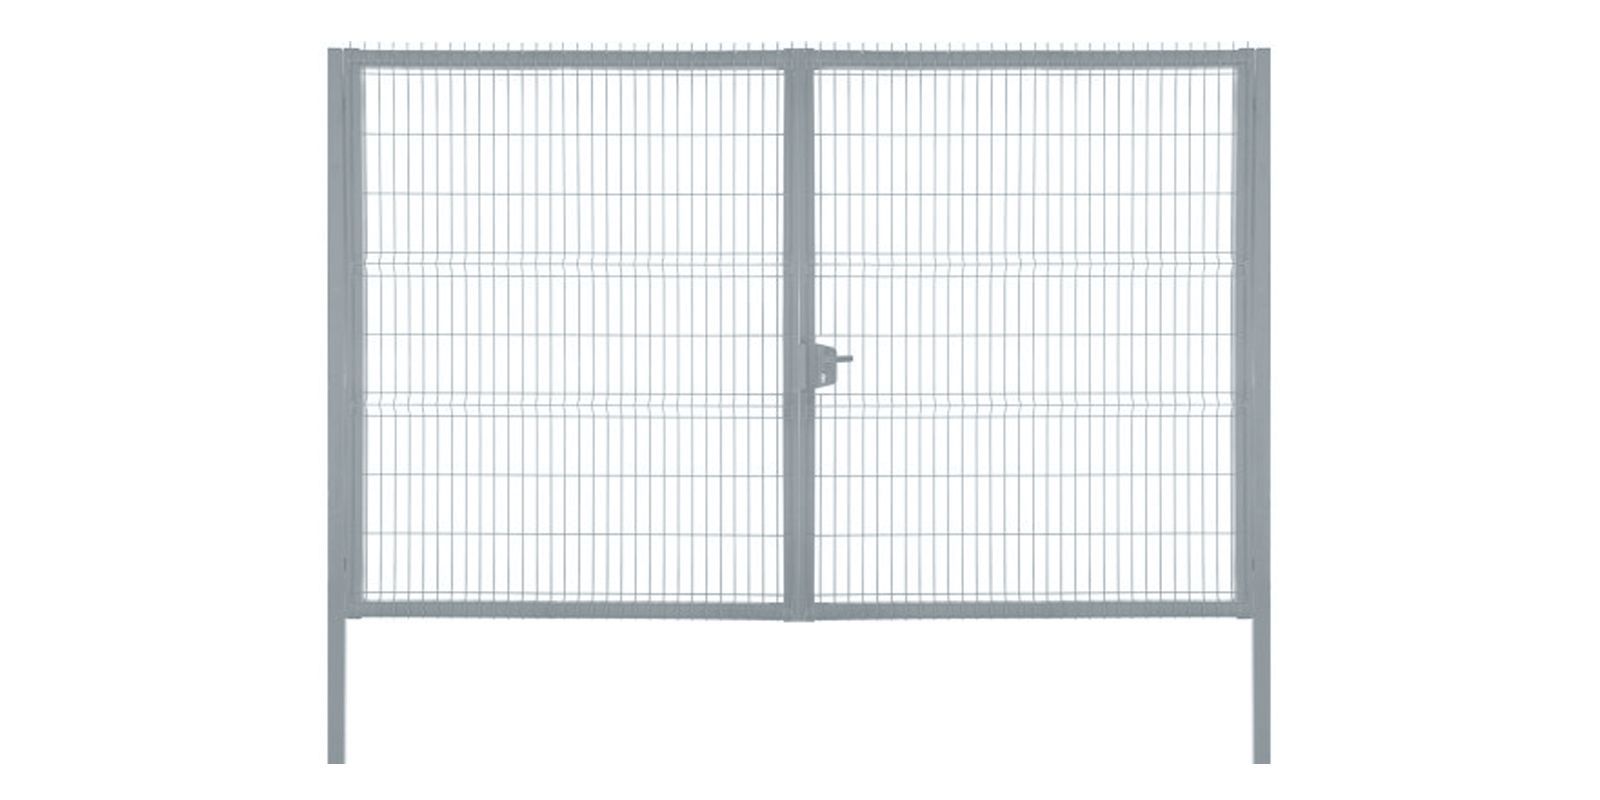 Ворота для панельного ограждения Profi, 2,43 м, ширина 5 м, изображение, фото | Сталь ТД